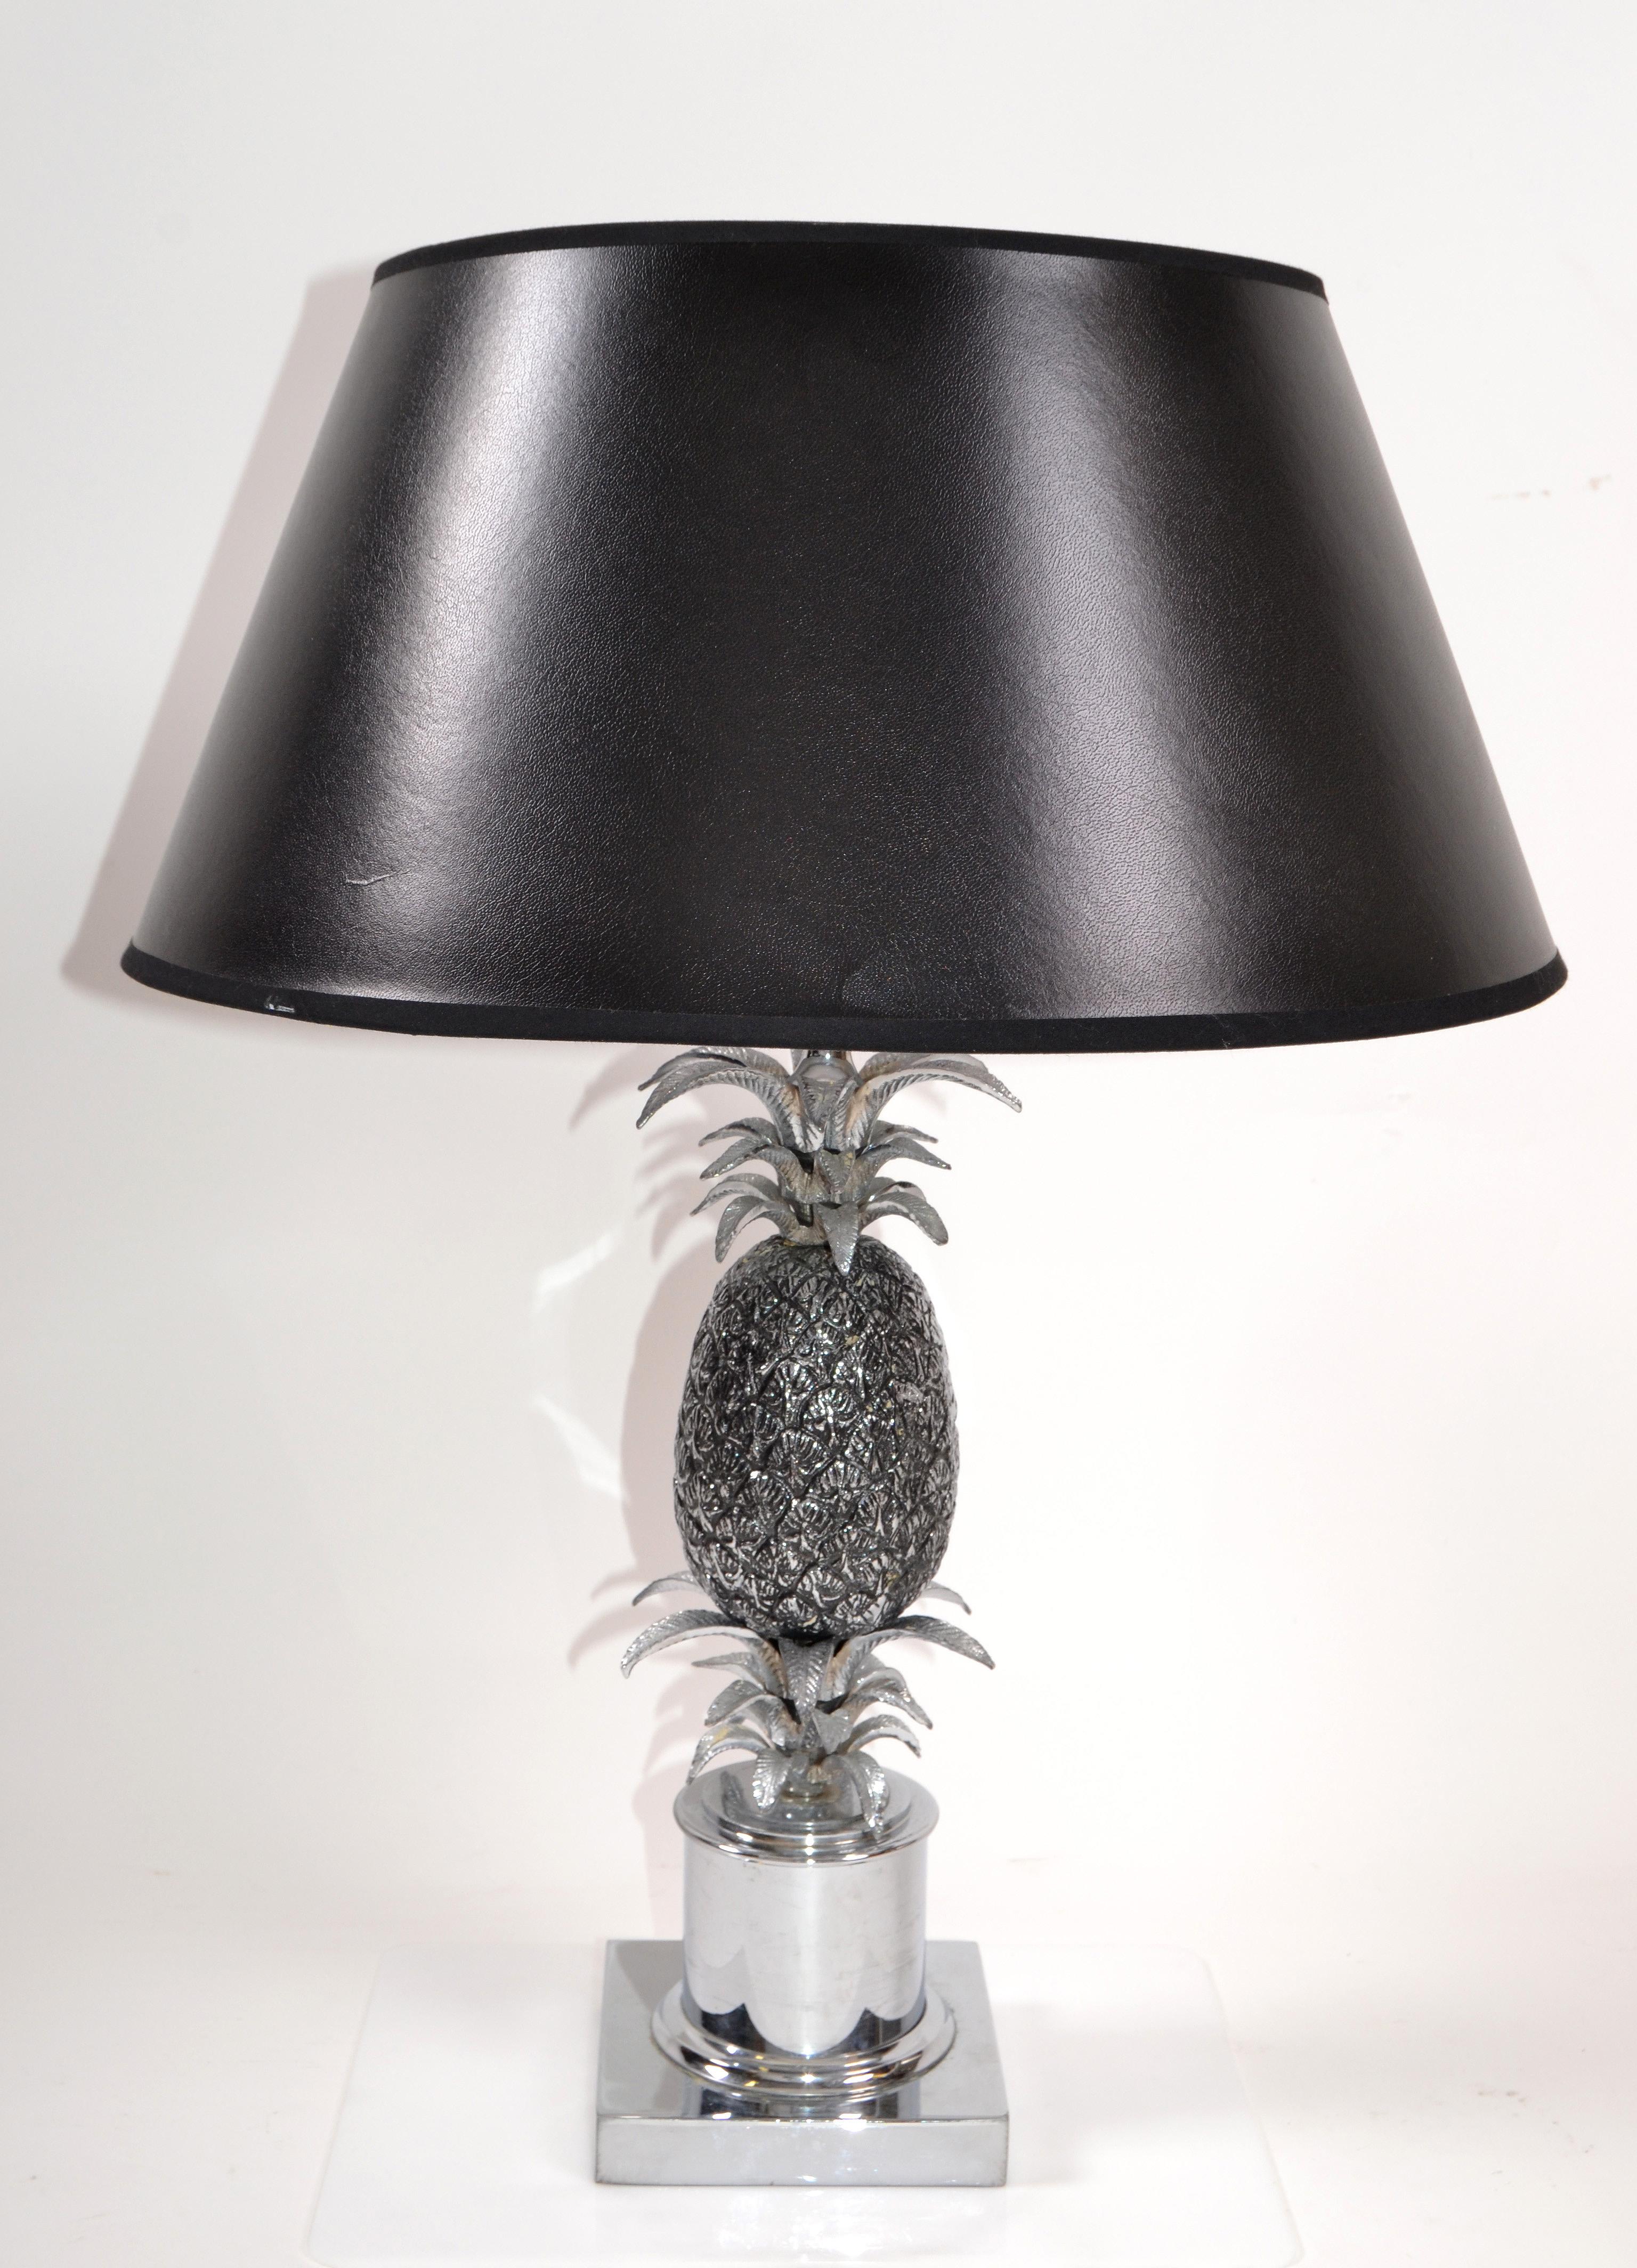 Maison Charles lampe de table ananas en chrome et nickel French Provincial 1960s.
Câblé pour les États-Unis et utilise une ampoule de max. 75 watts.
 